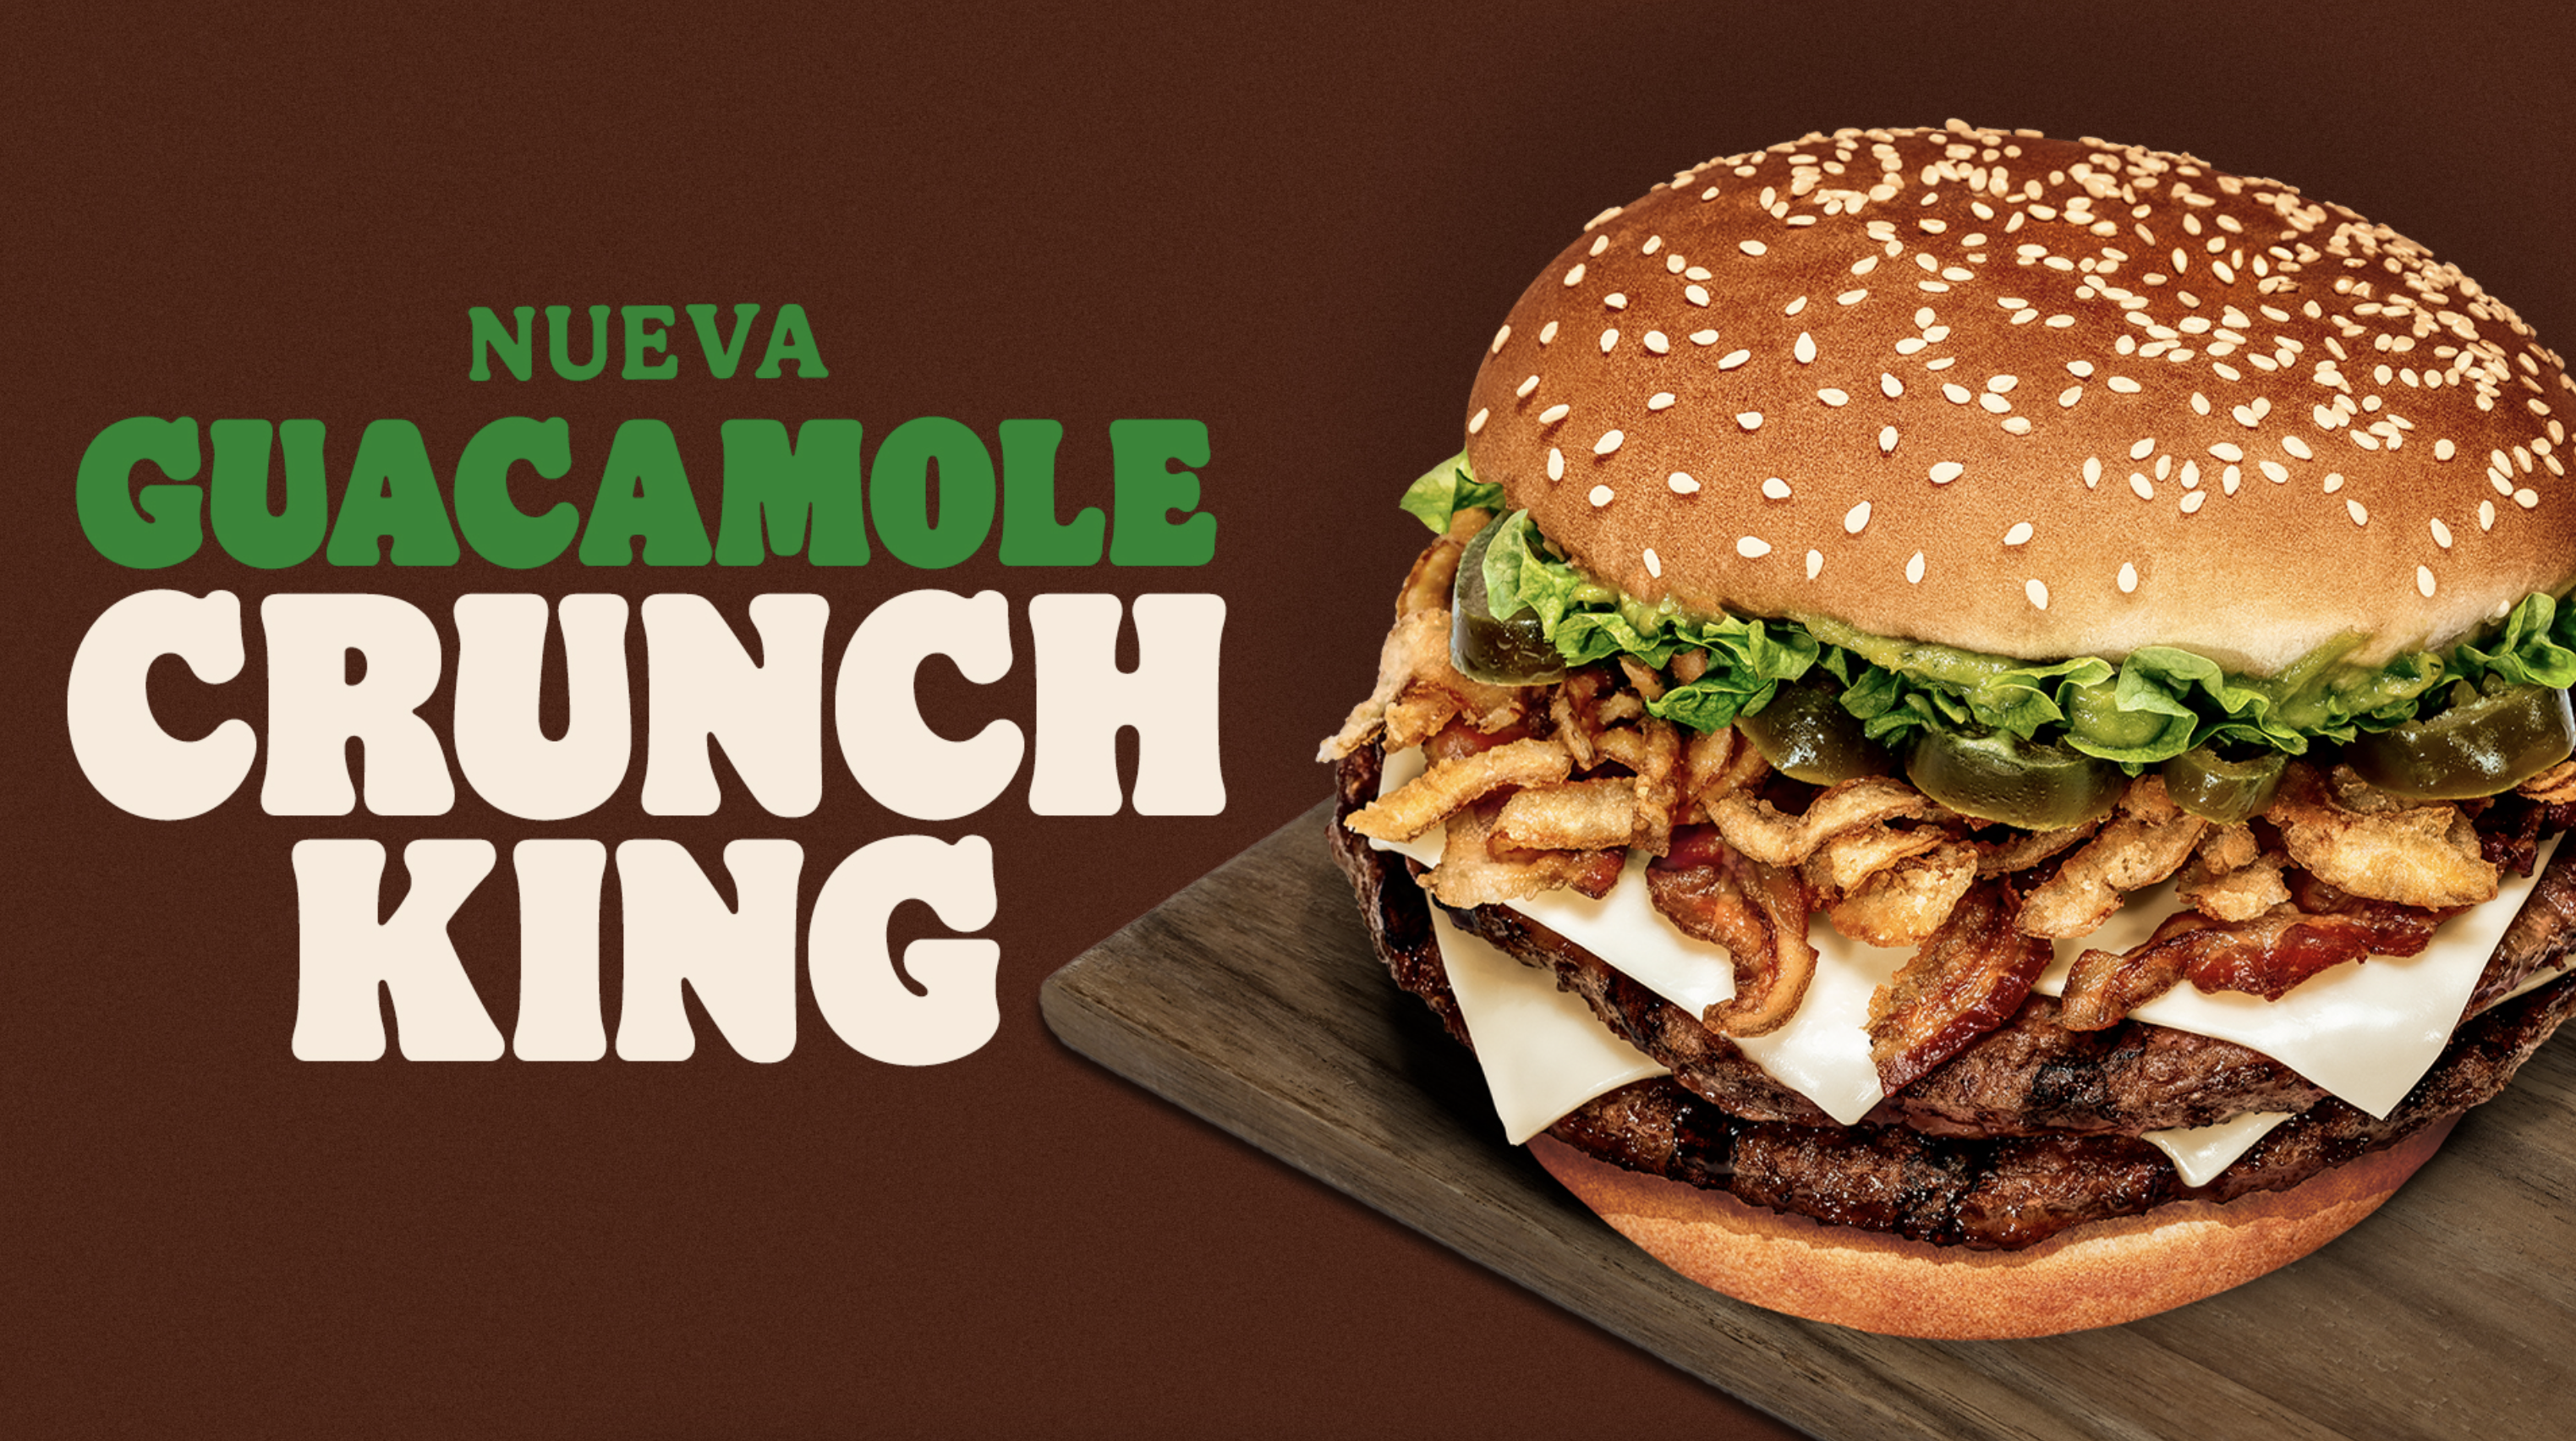 Aguacates mexicanos dan vida a la nueva Guacamole Crunch King de Burger King®, la hamburguesa infalible para este domingo del gran juego